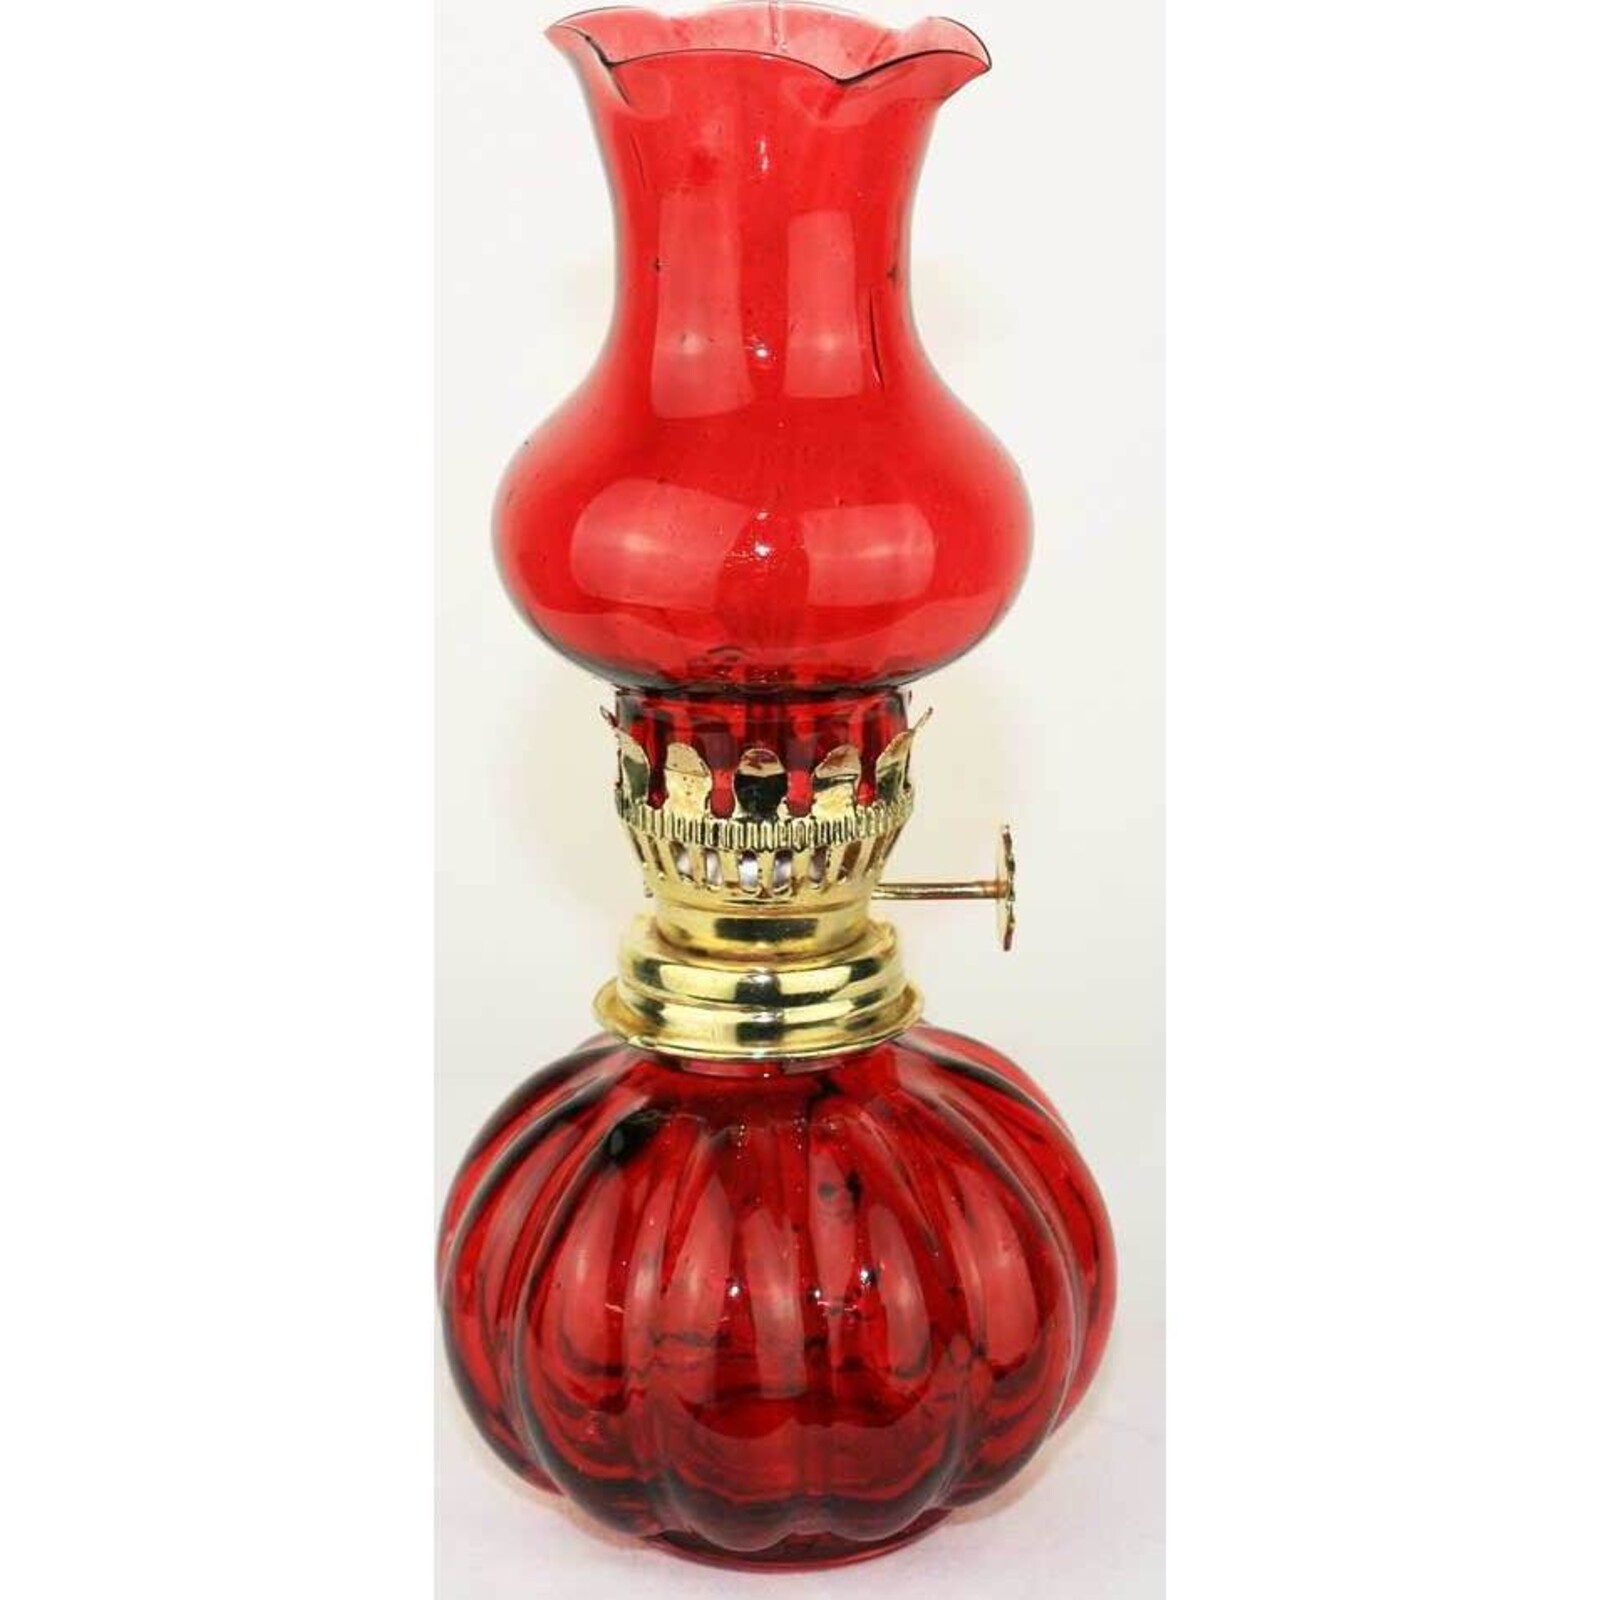 Oil Burner Vintage Red Small